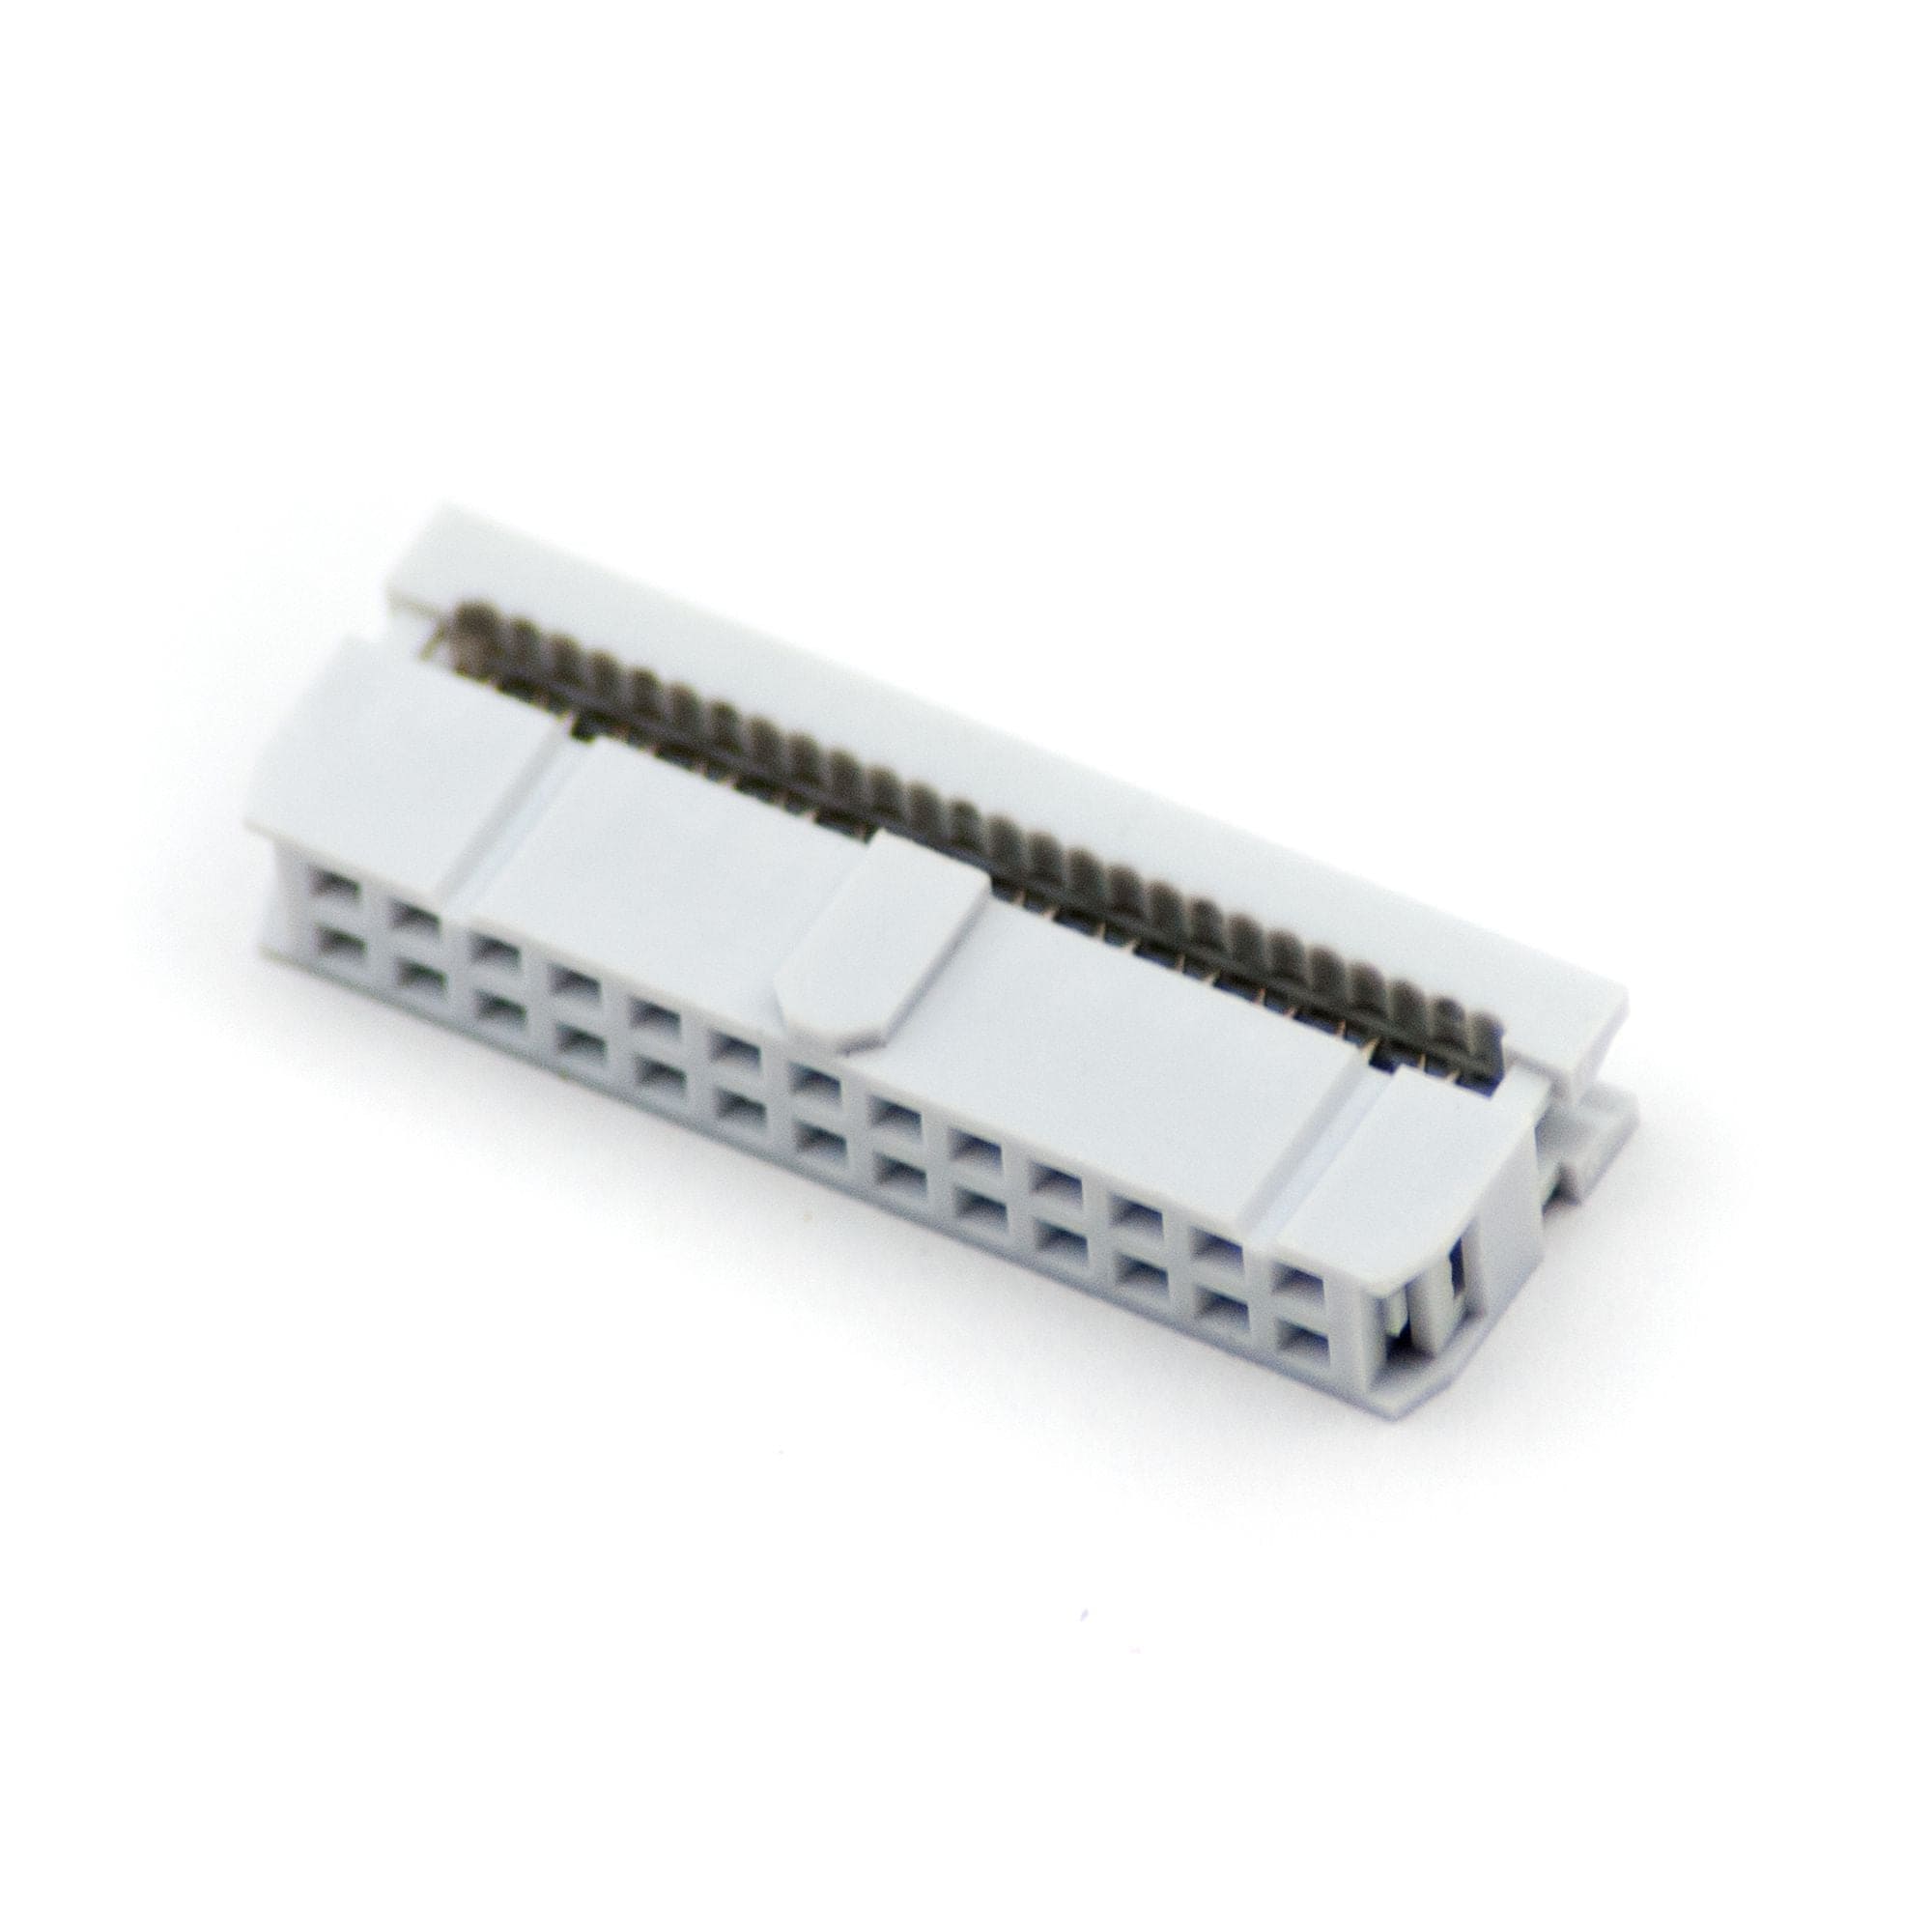 26 Pin Ribbon Cable Socket Connector - Grey - The Pi Hut